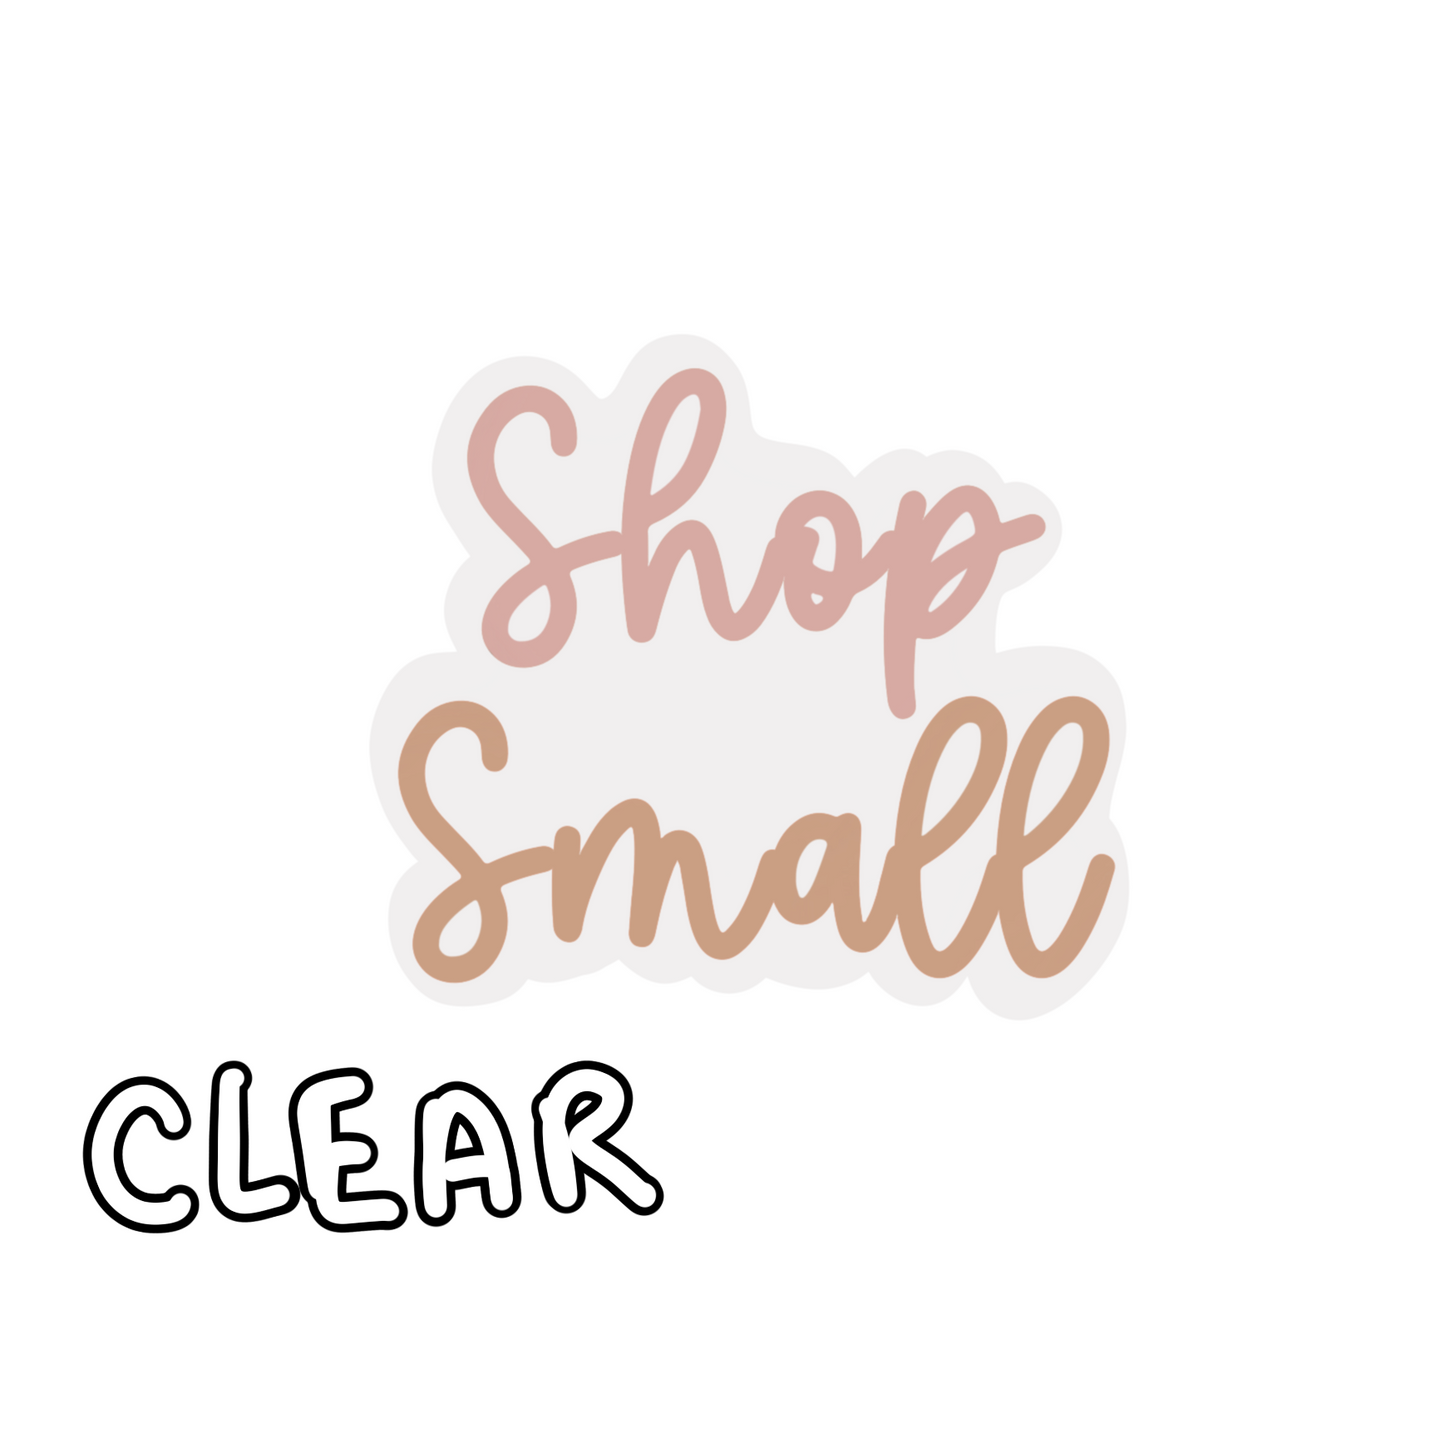 CLEAR Cursive Shop Small Sticker